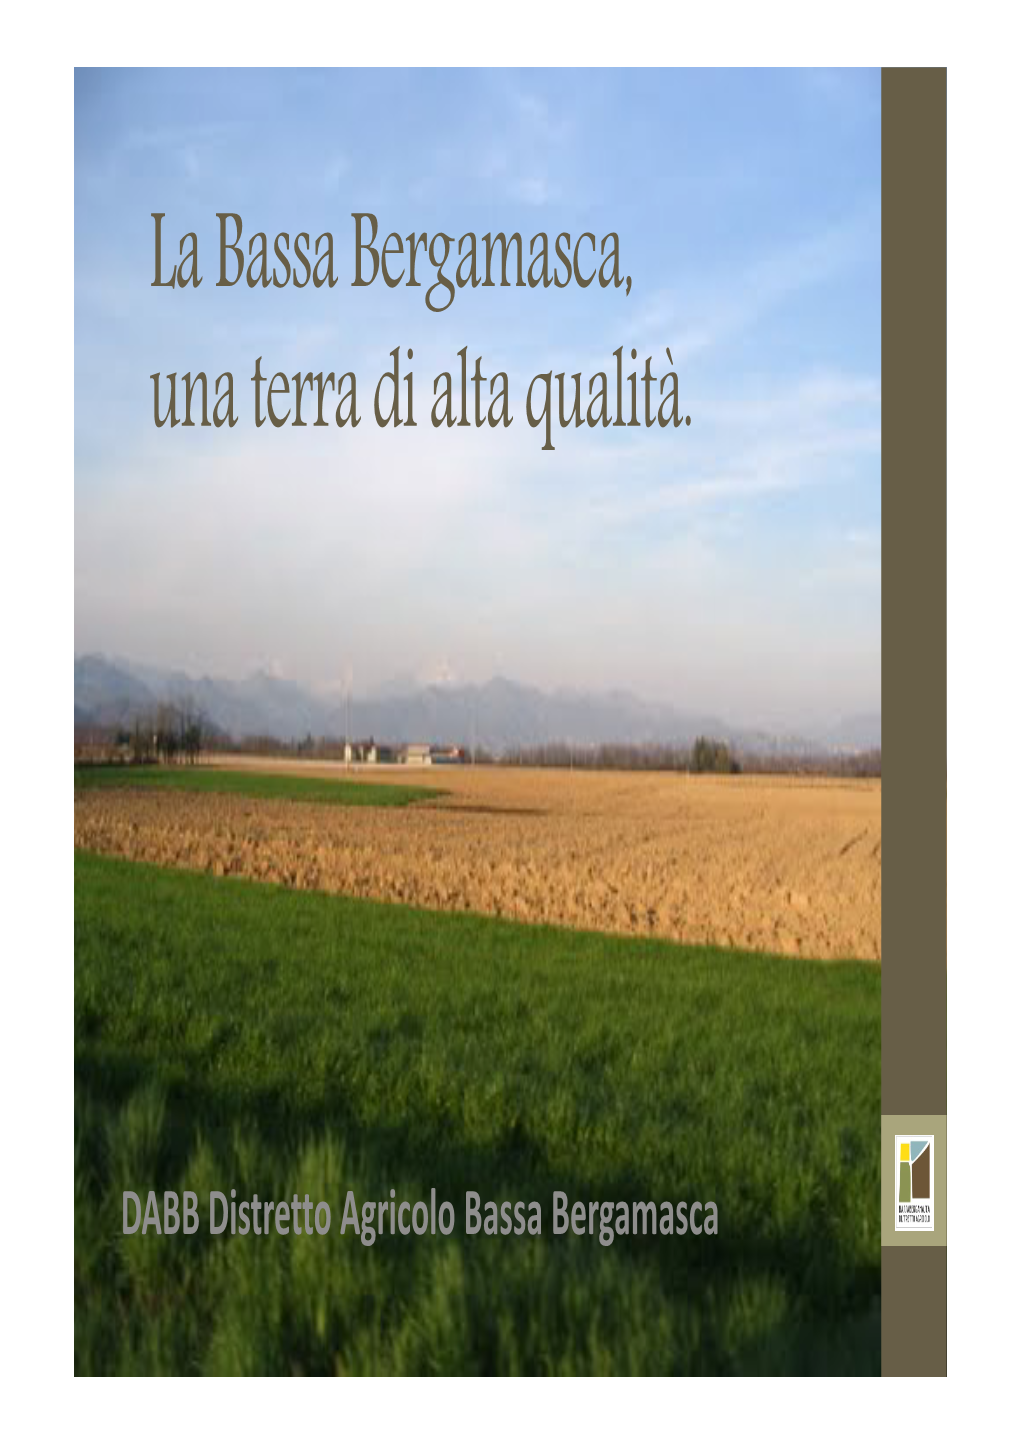 Distretto Agricolo Della Bassa Bergamasca